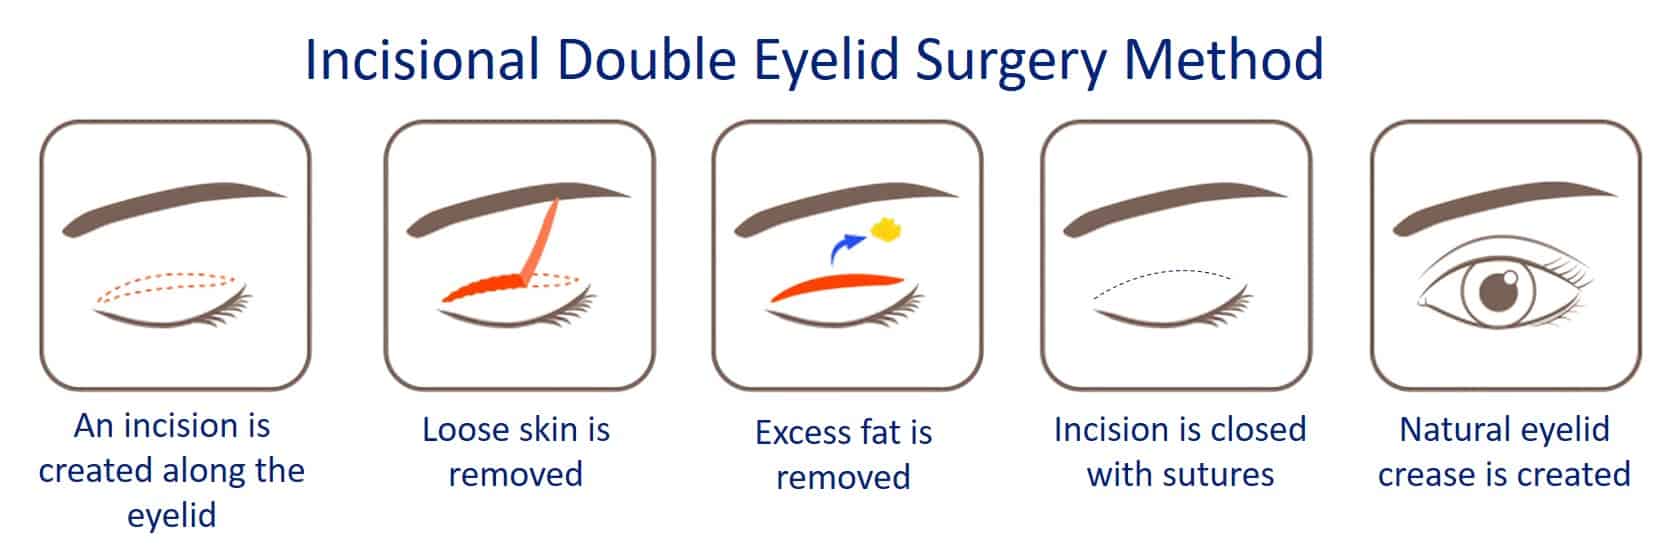 incisional double eyelid surgery method